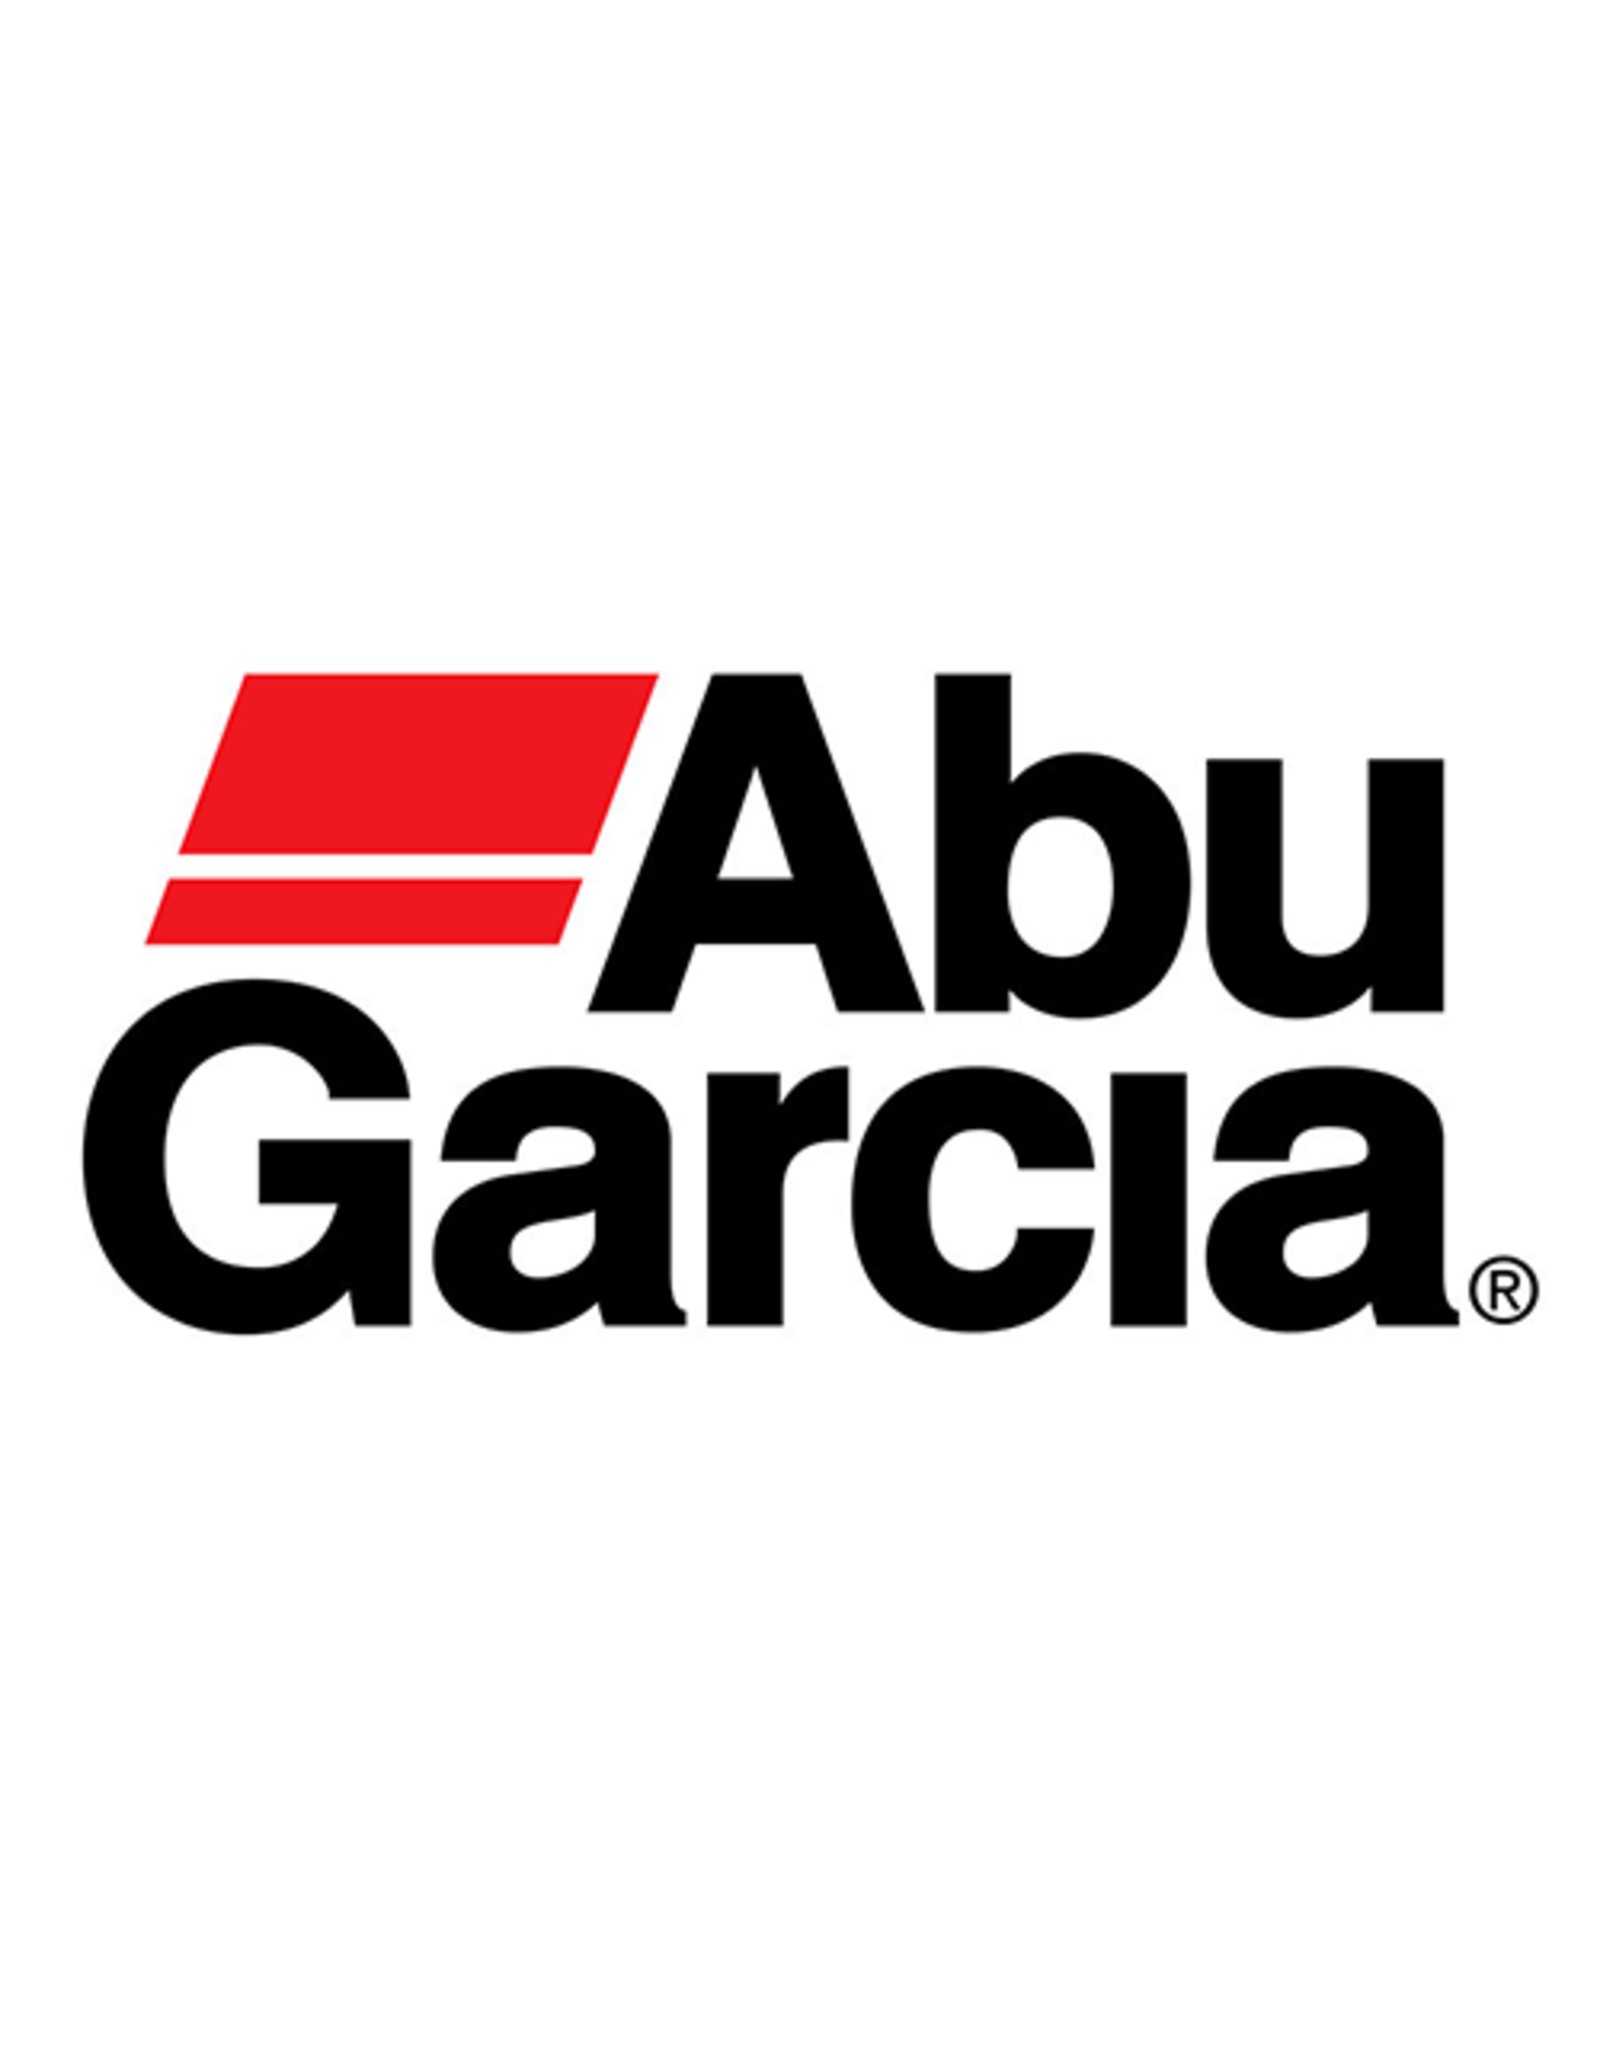 Abu Garcia 25863  PAWL BUSHING